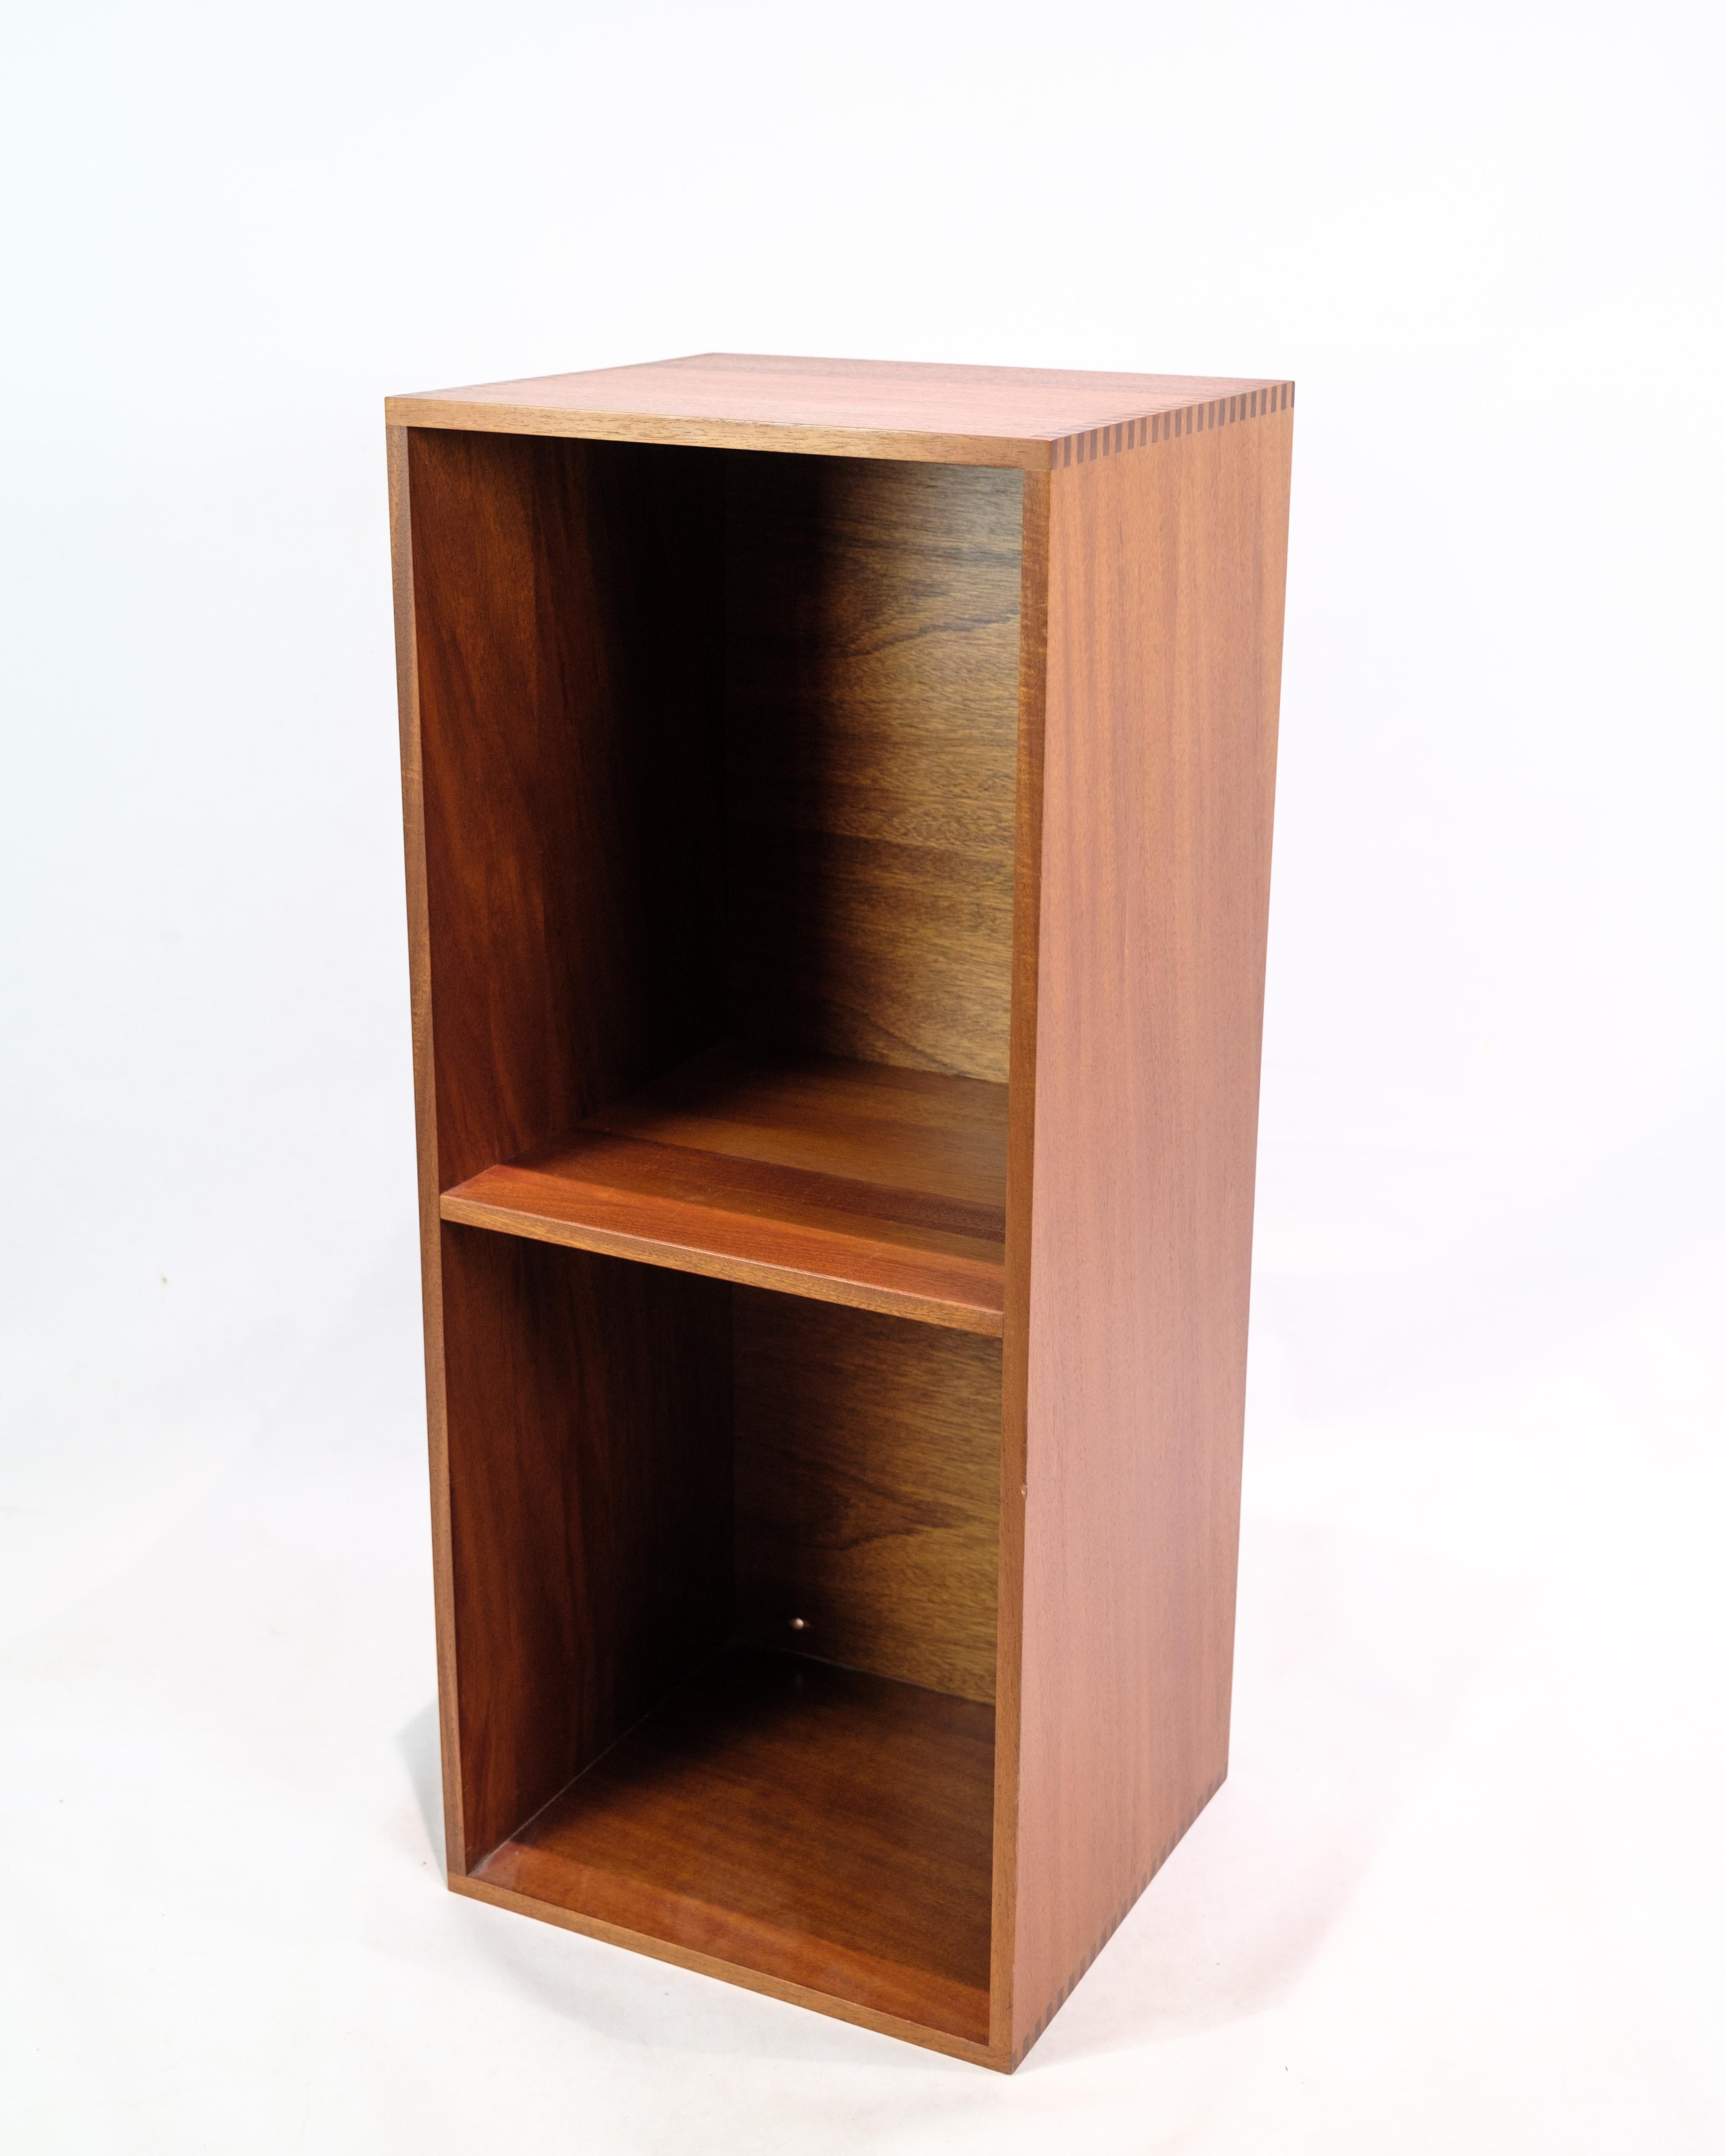 Cette bibliothèque avec étagère est un exemple de design danois des années 1960, en bois de teck. Il représente une époque où le design des meubles danois s'est épanoui et a acquis une reconnaissance internationale pour sa simplicité, sa